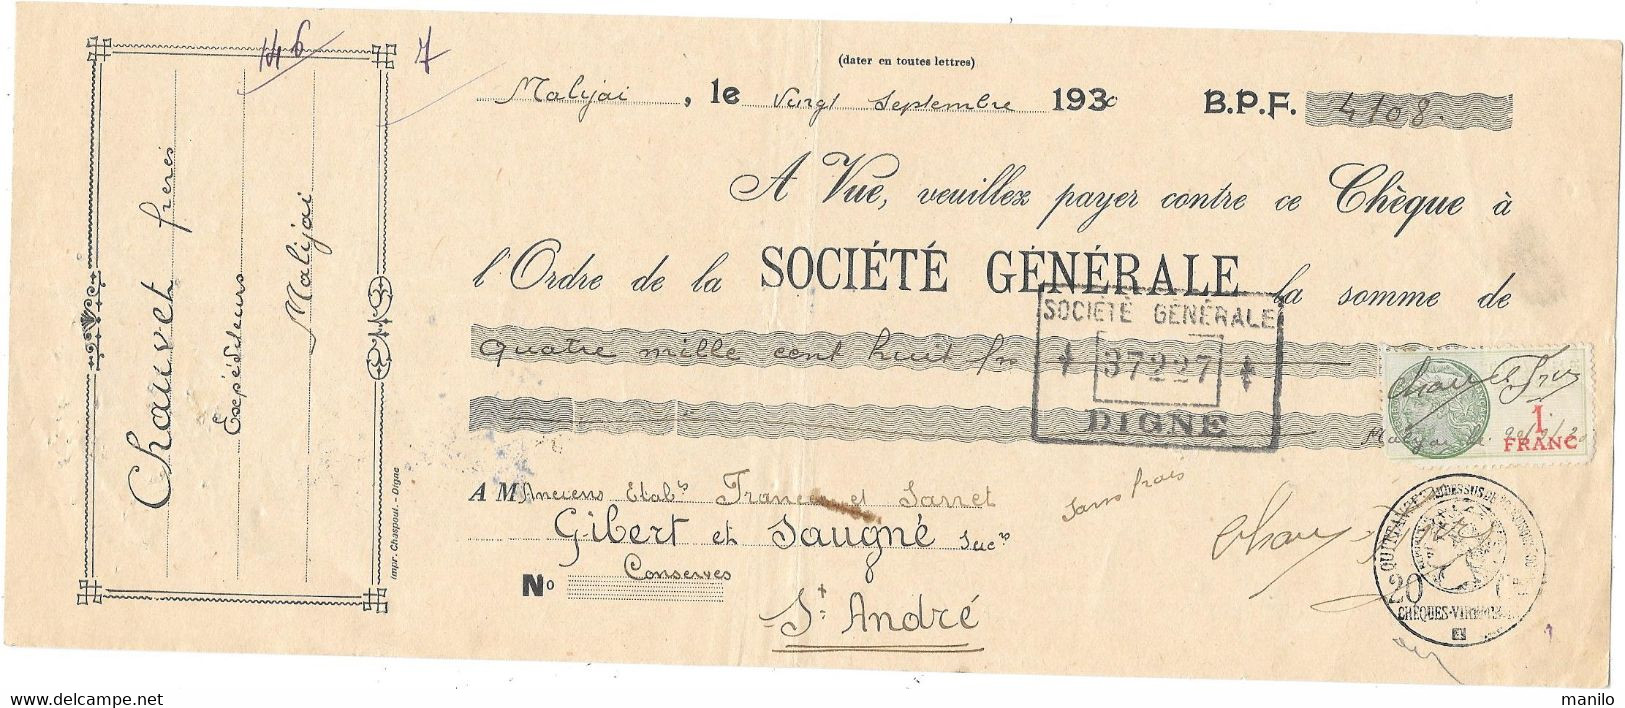 CHEQUE 1930 -  CHAUVET Frères - Expéditeurs  MALIJAI   > GIBERT & SAUGNE   St André Les Alpes - SOCIETE GENERALE Digne - Assegni & Assegni Di Viaggio